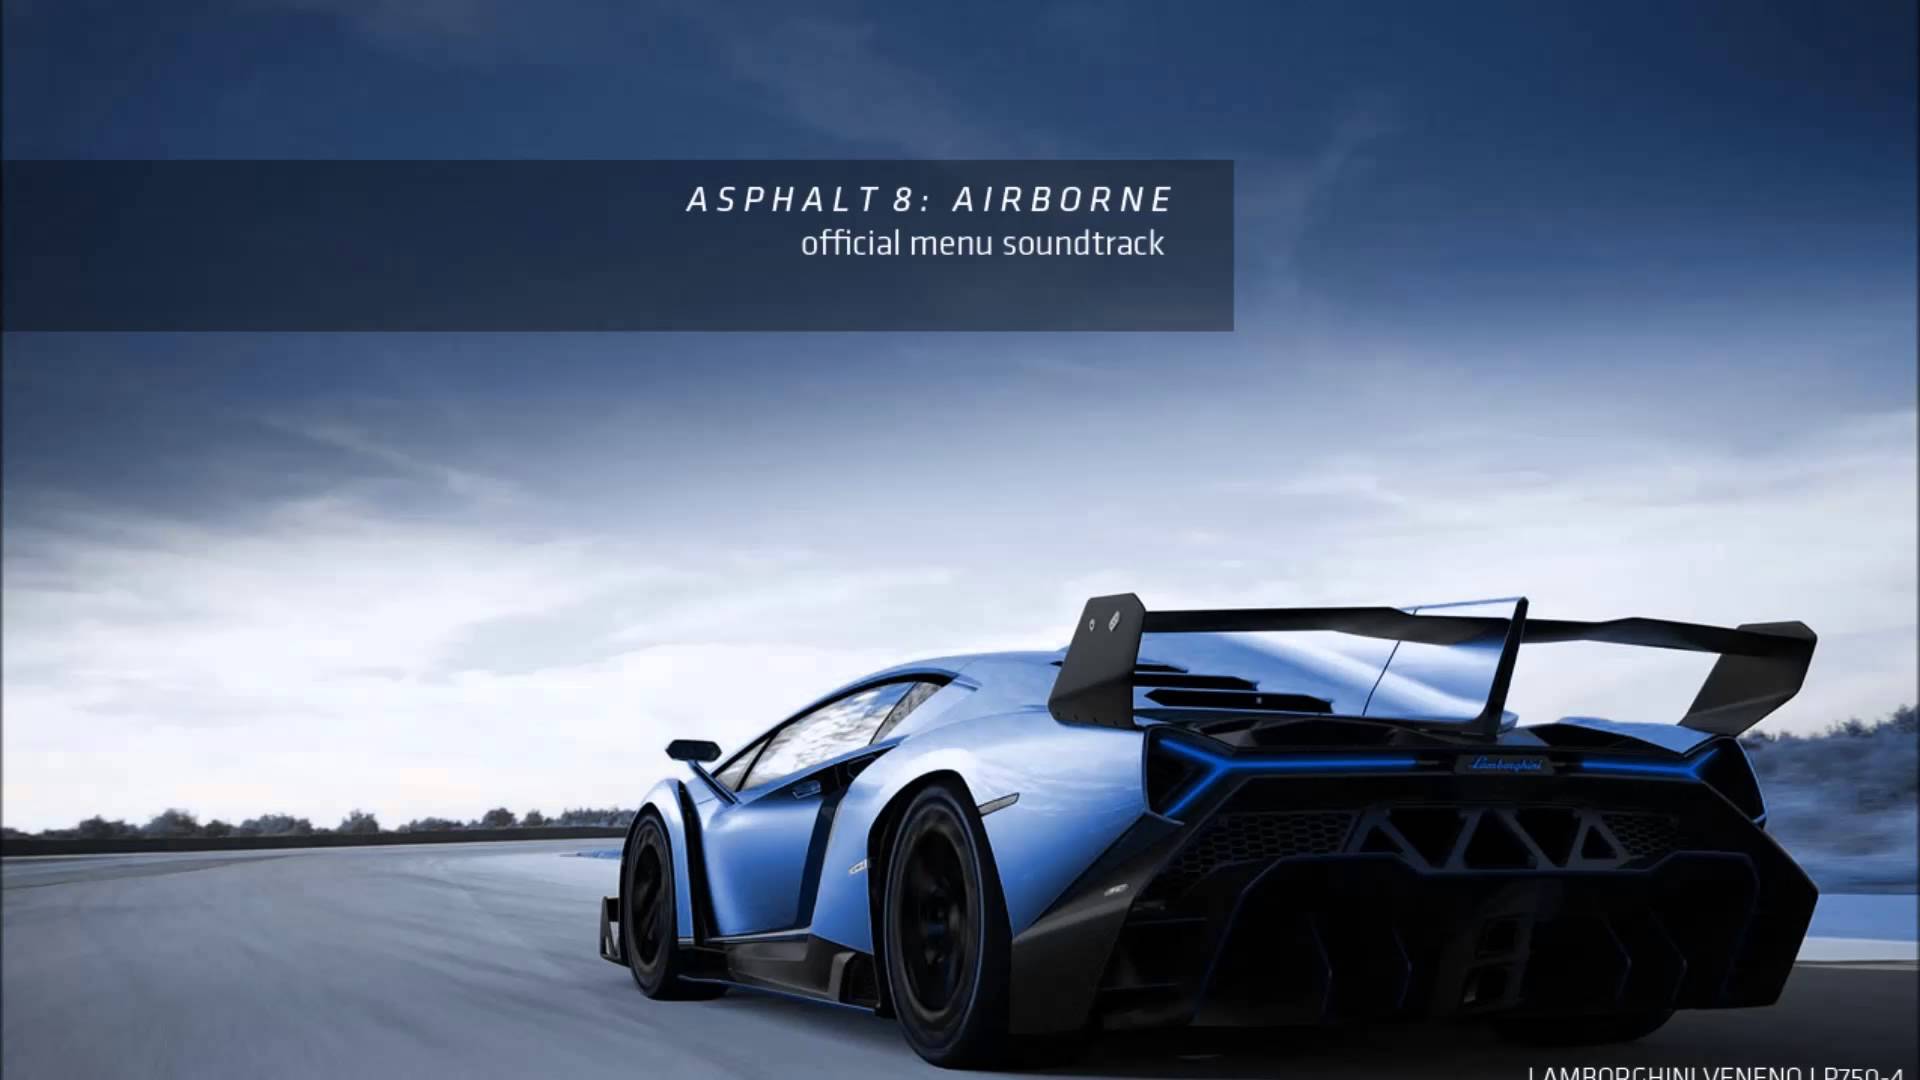 asphalt 8 airborne original soundtrack